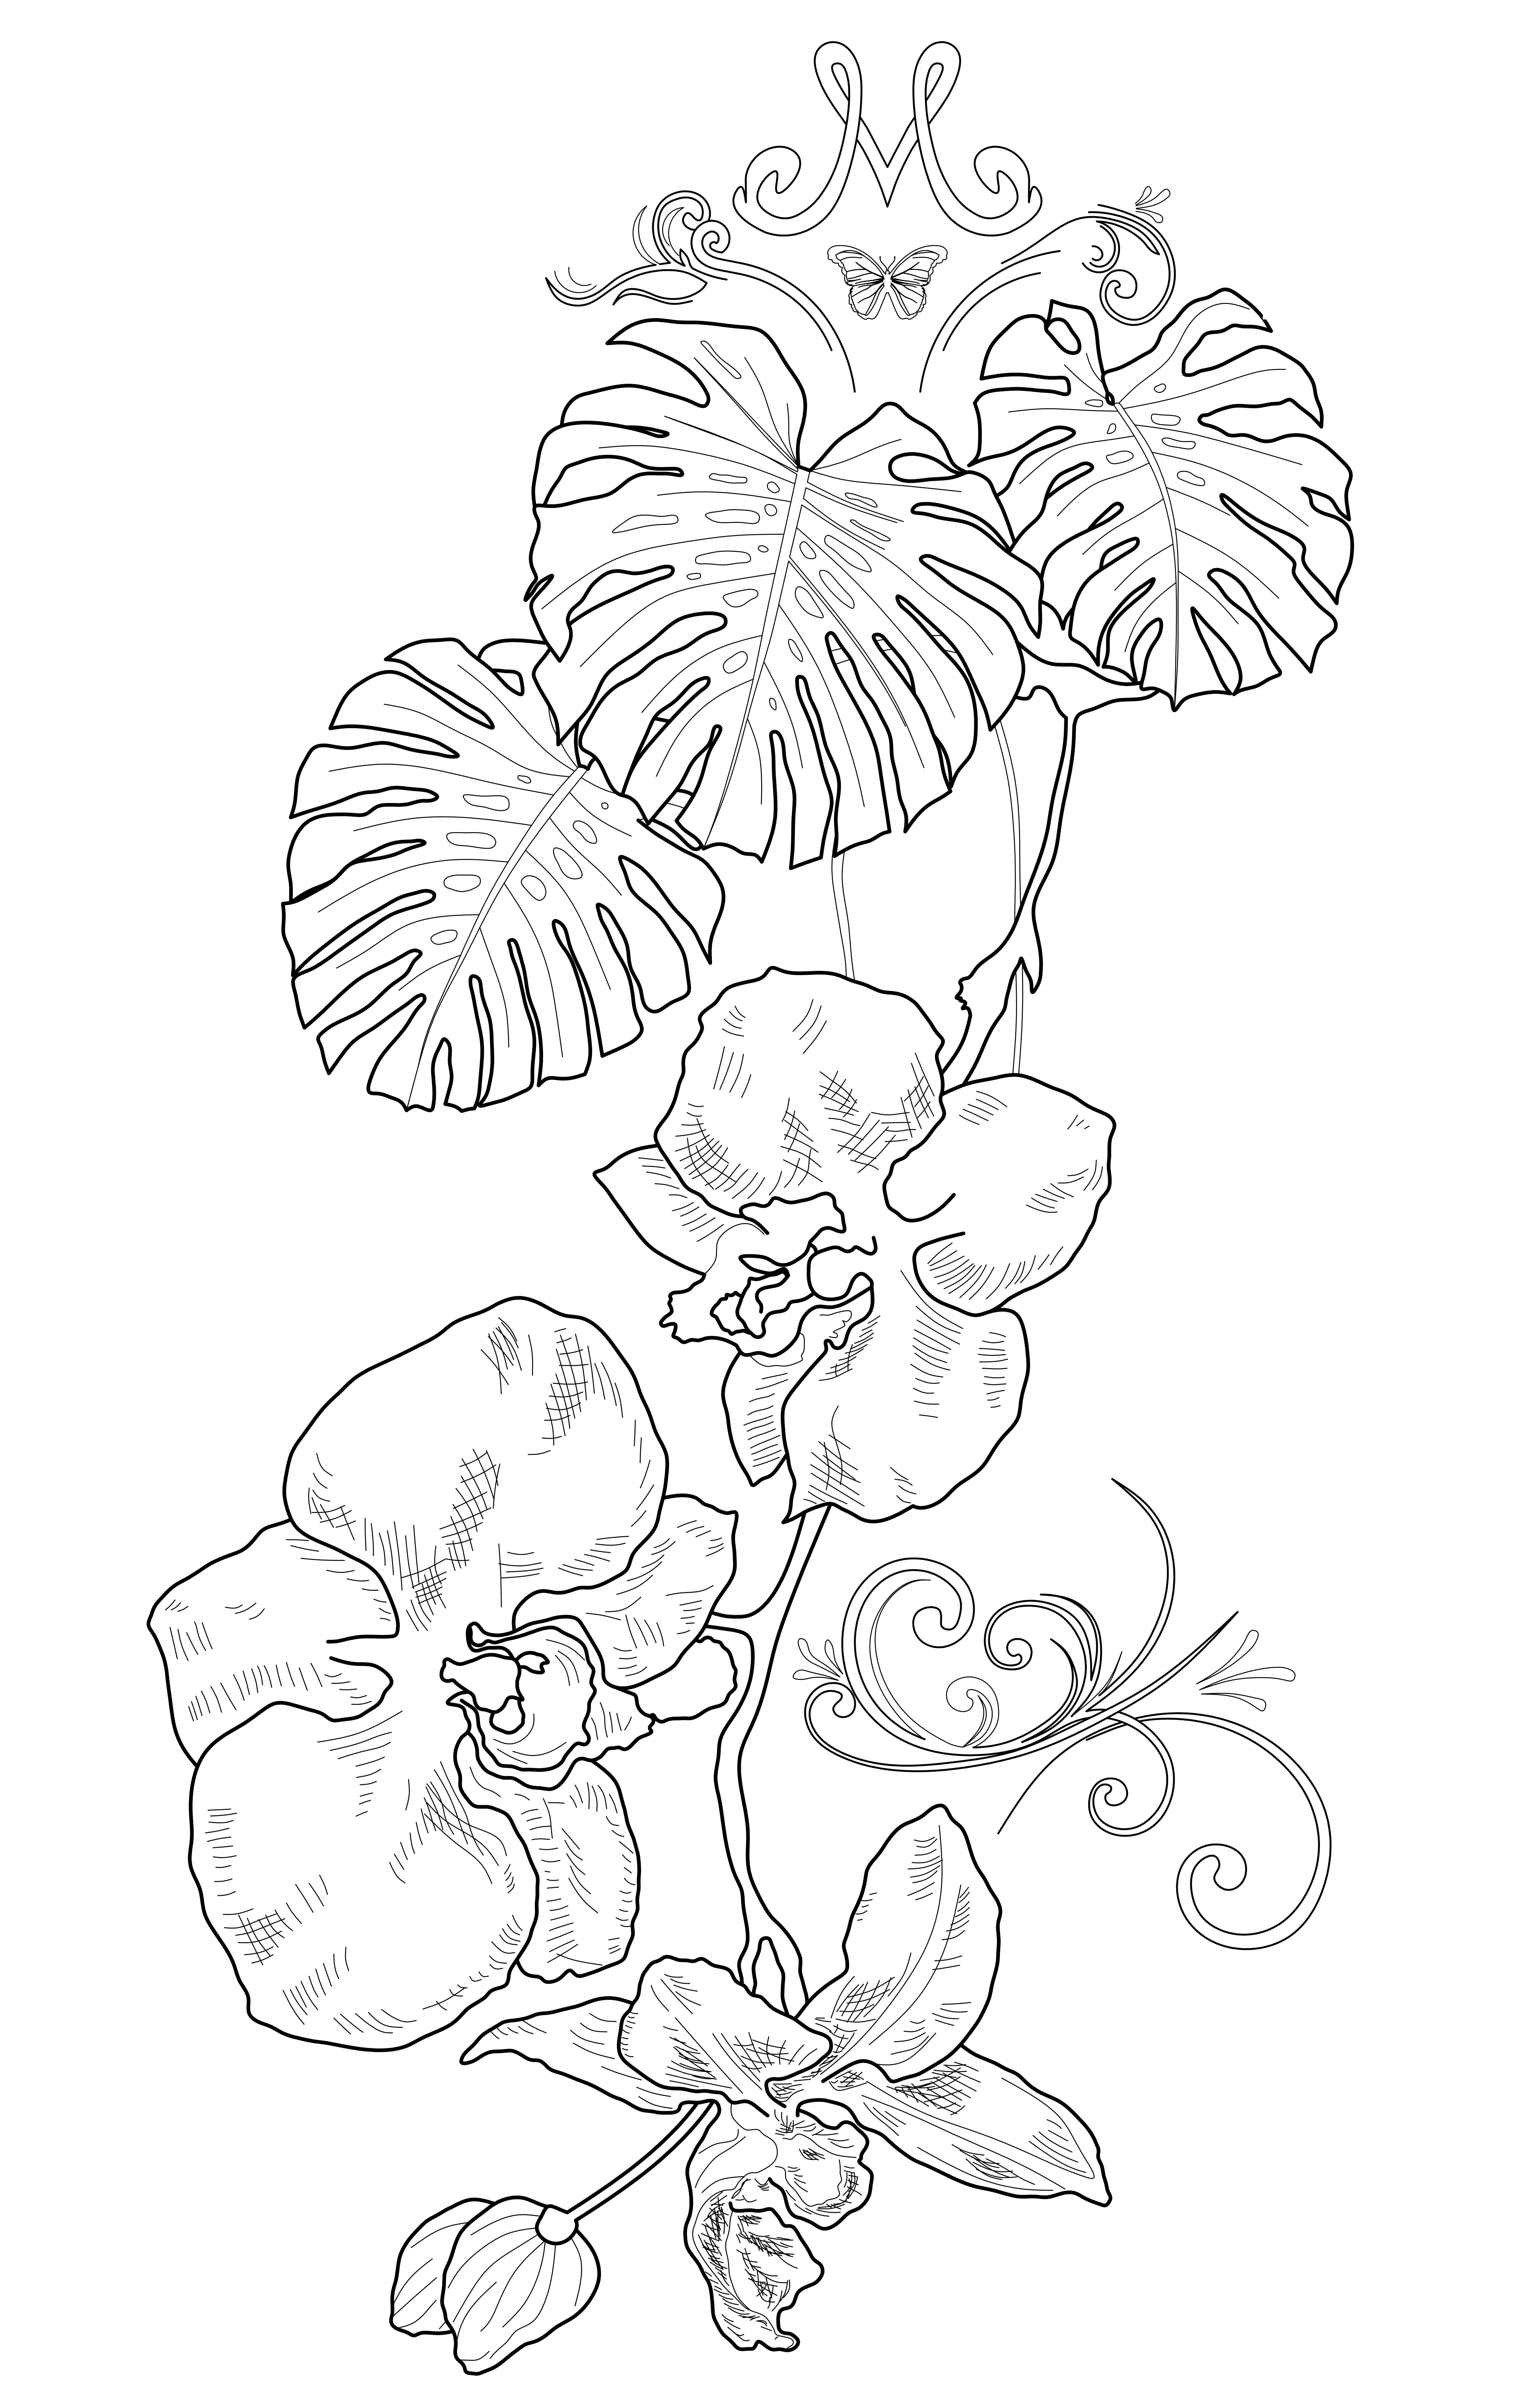 Фото Был выполнен эскиз тату для девушки. Композиция из цветов орхидеи и листьев монстеры, украшение вензелями. Вверху композиции - стилизованная буква "М" - первая буква имени Марина - обладательницы этой татуировки.